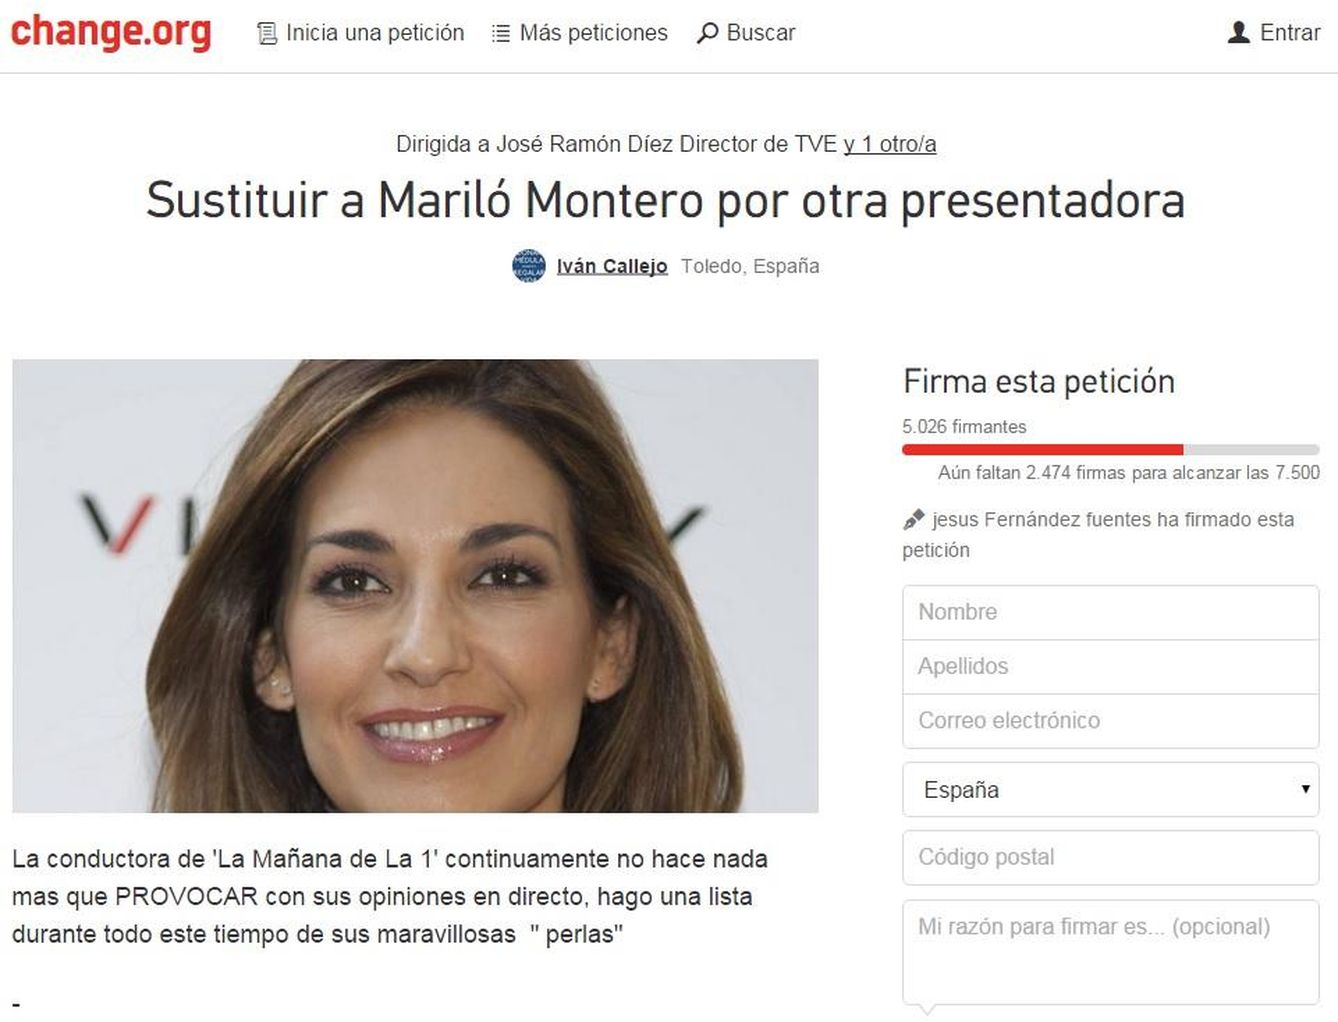 Carta que pide el despido de Mariló Montero (Change.org)